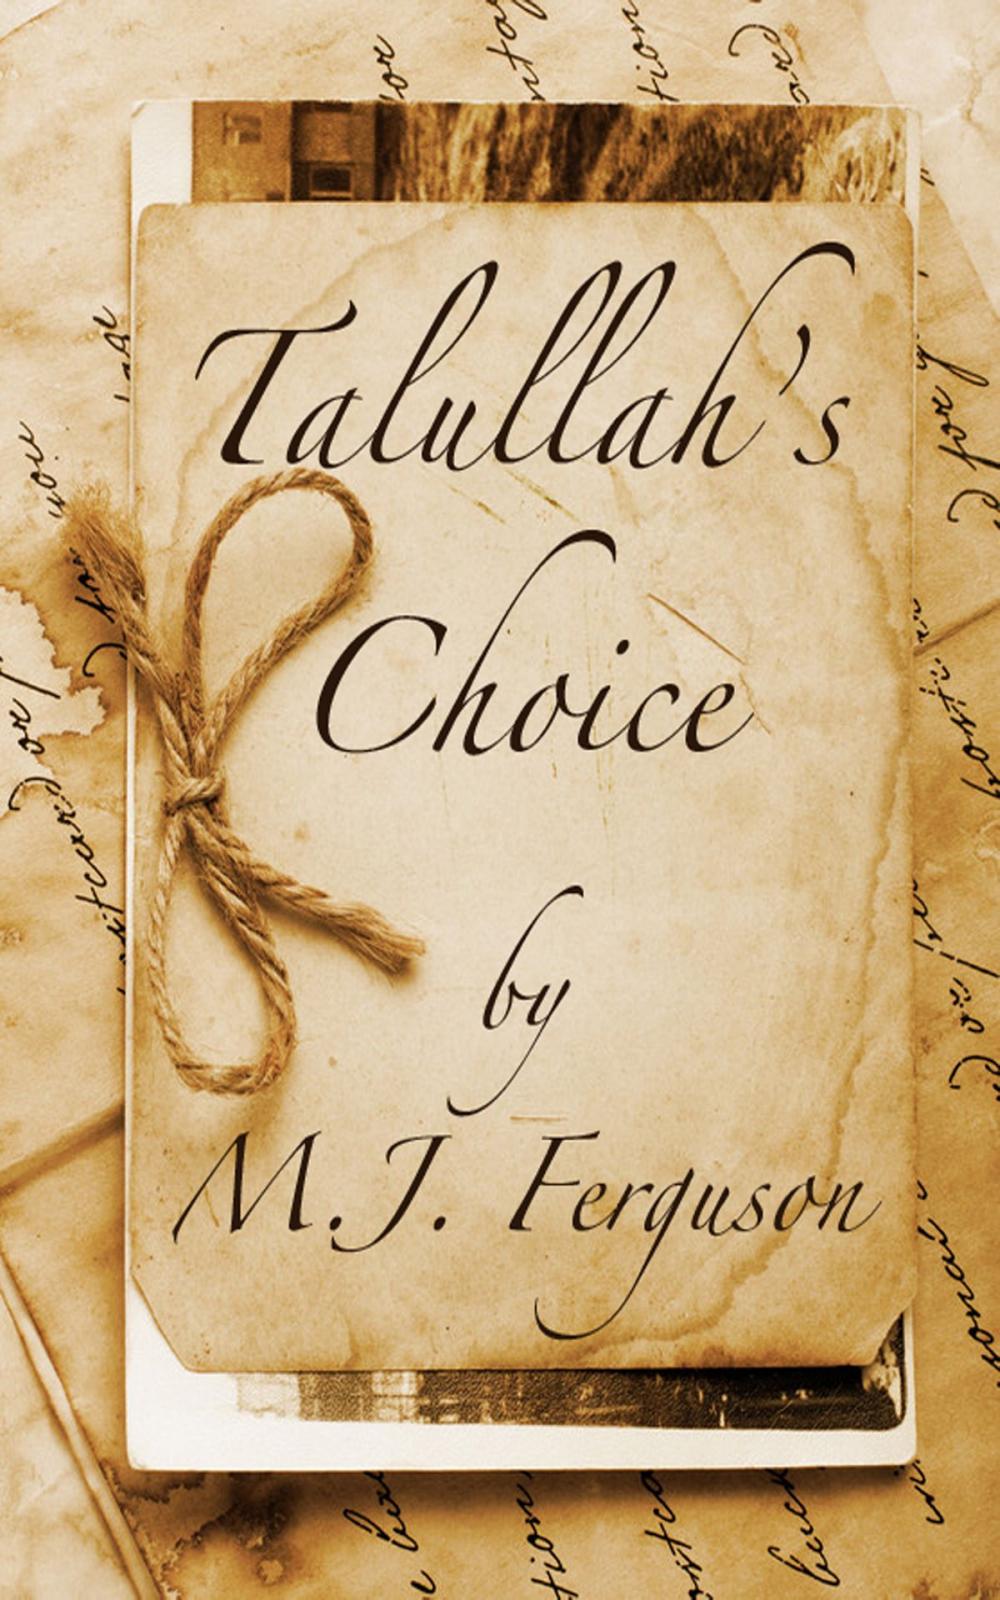 Big bigCover of Talullah's Choice